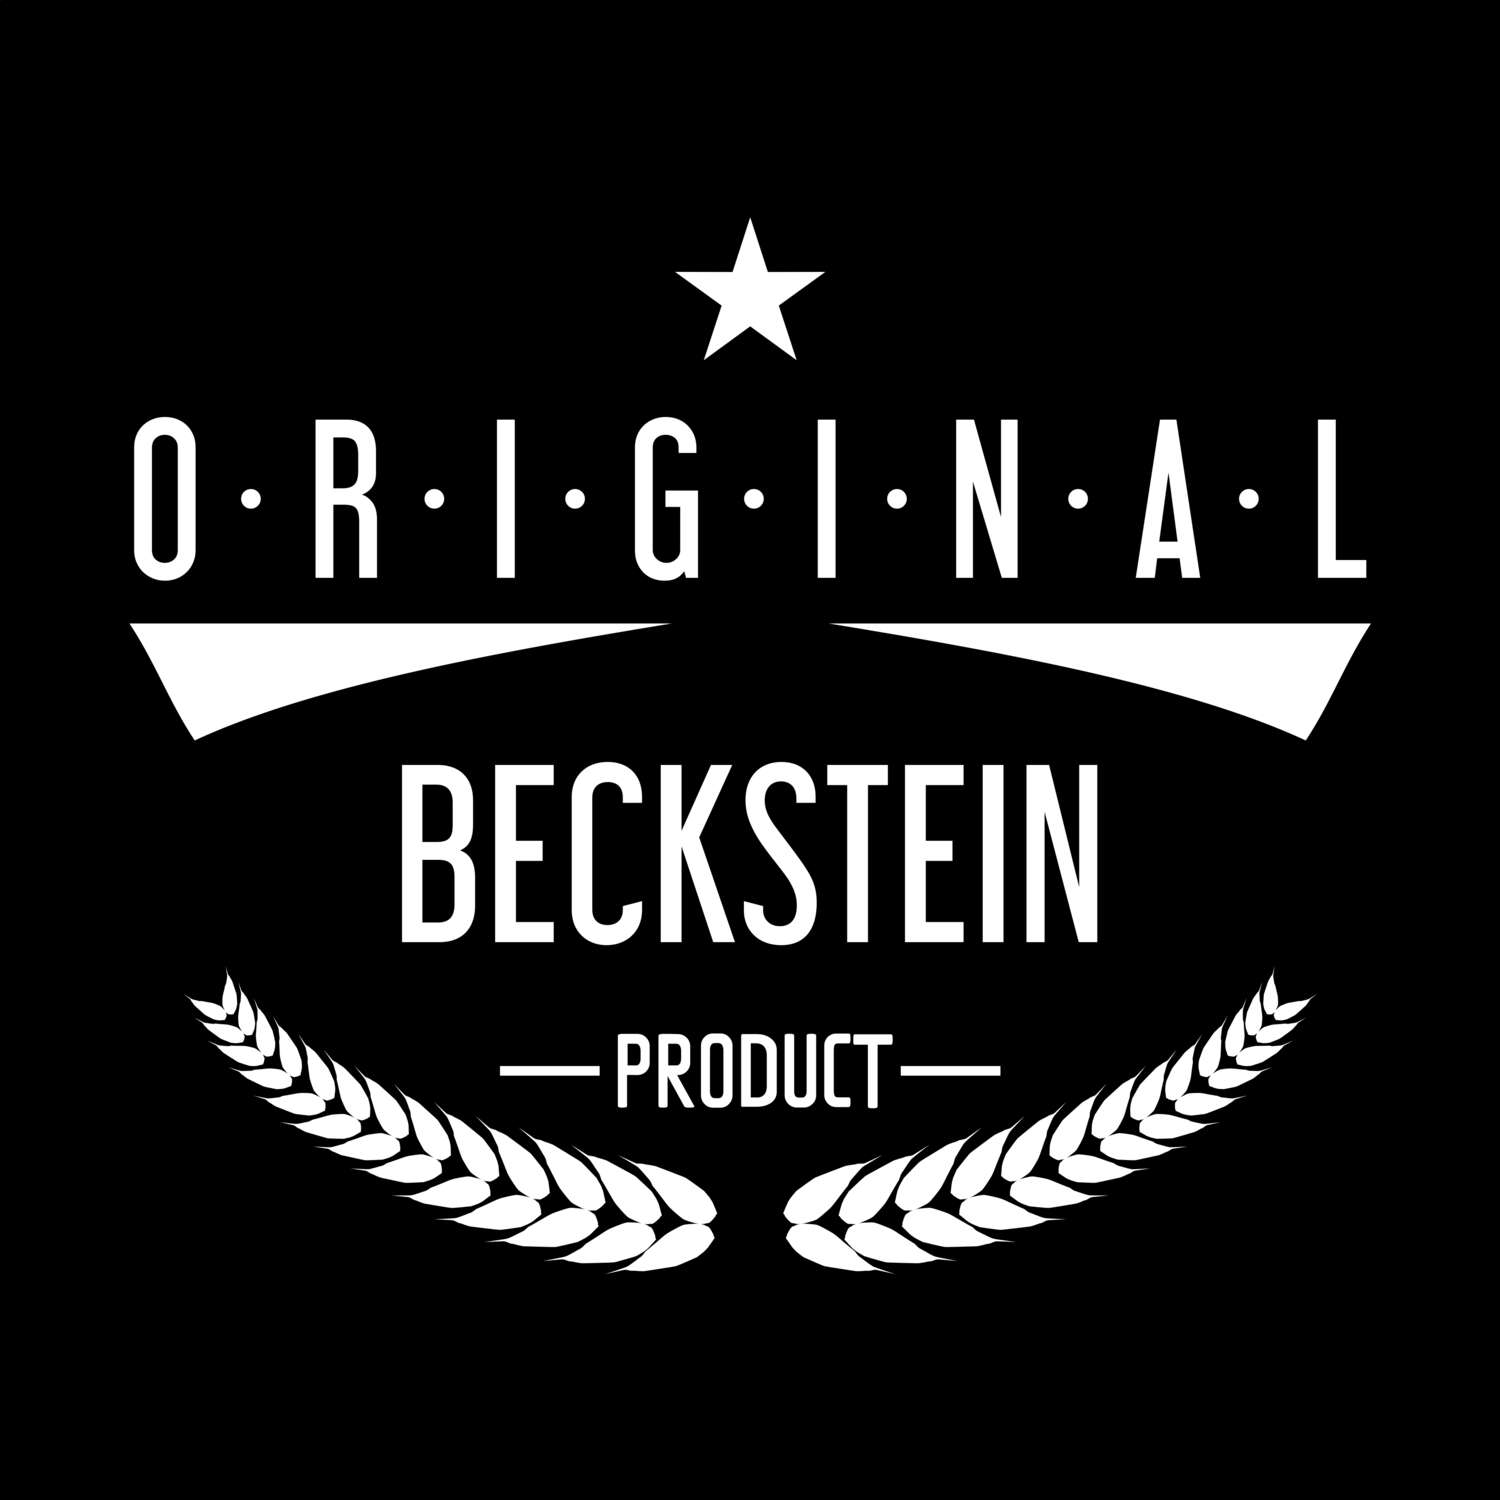 Beckstein T-Shirt »Original Product«